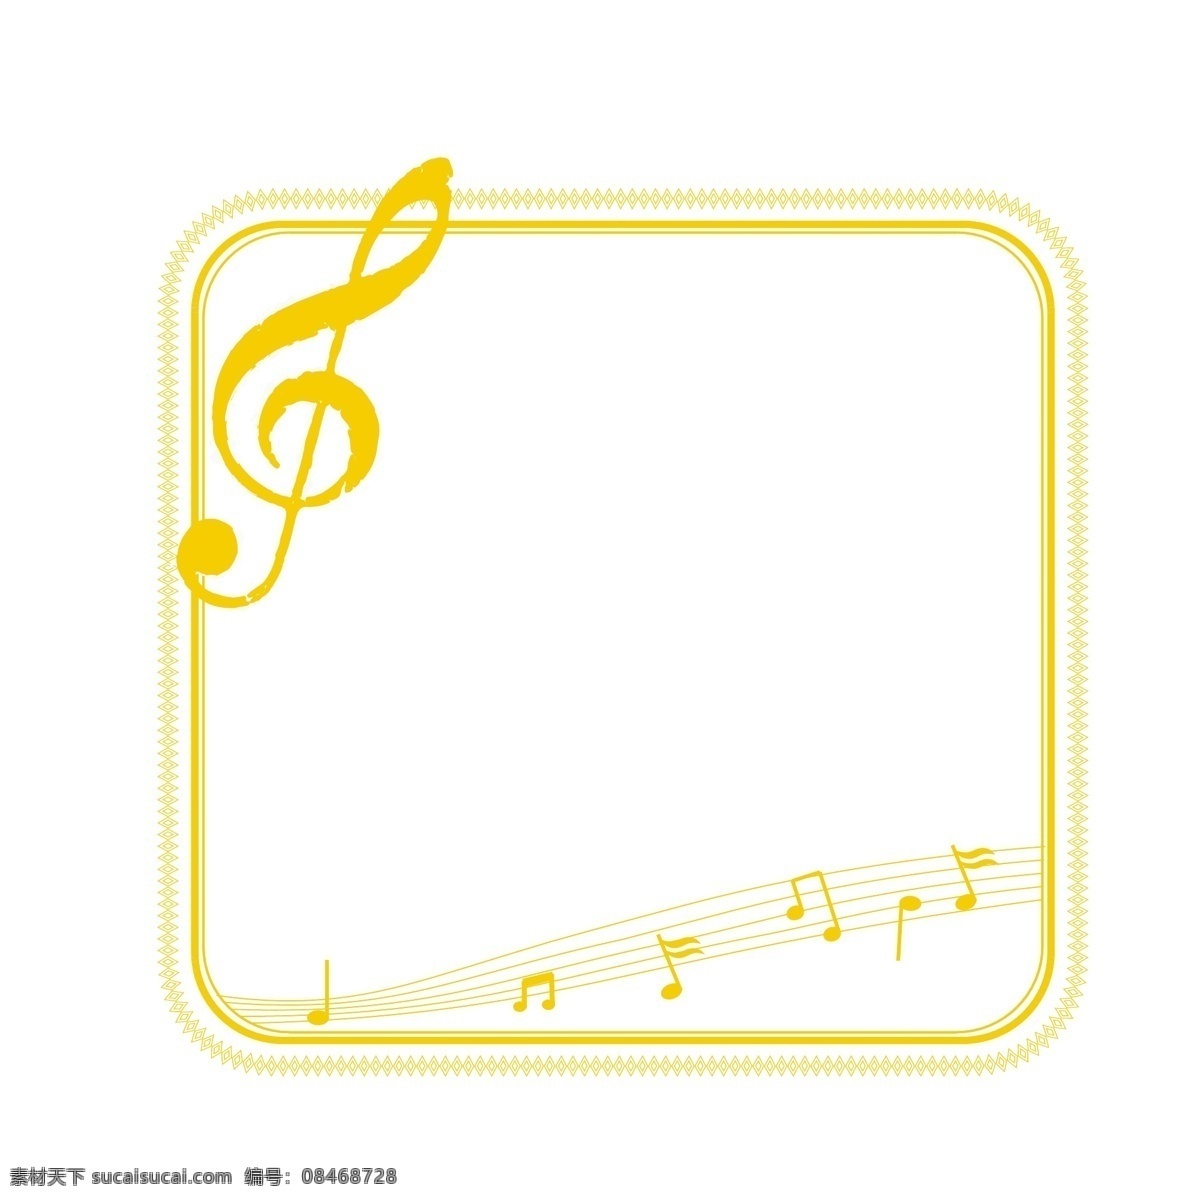 金色 五线谱 可爱 音符 矢量 边框 音乐 乐章 乐谱 简约方形边框 金色边框 烫金边框 亮金色边框 音乐符号 歌曲